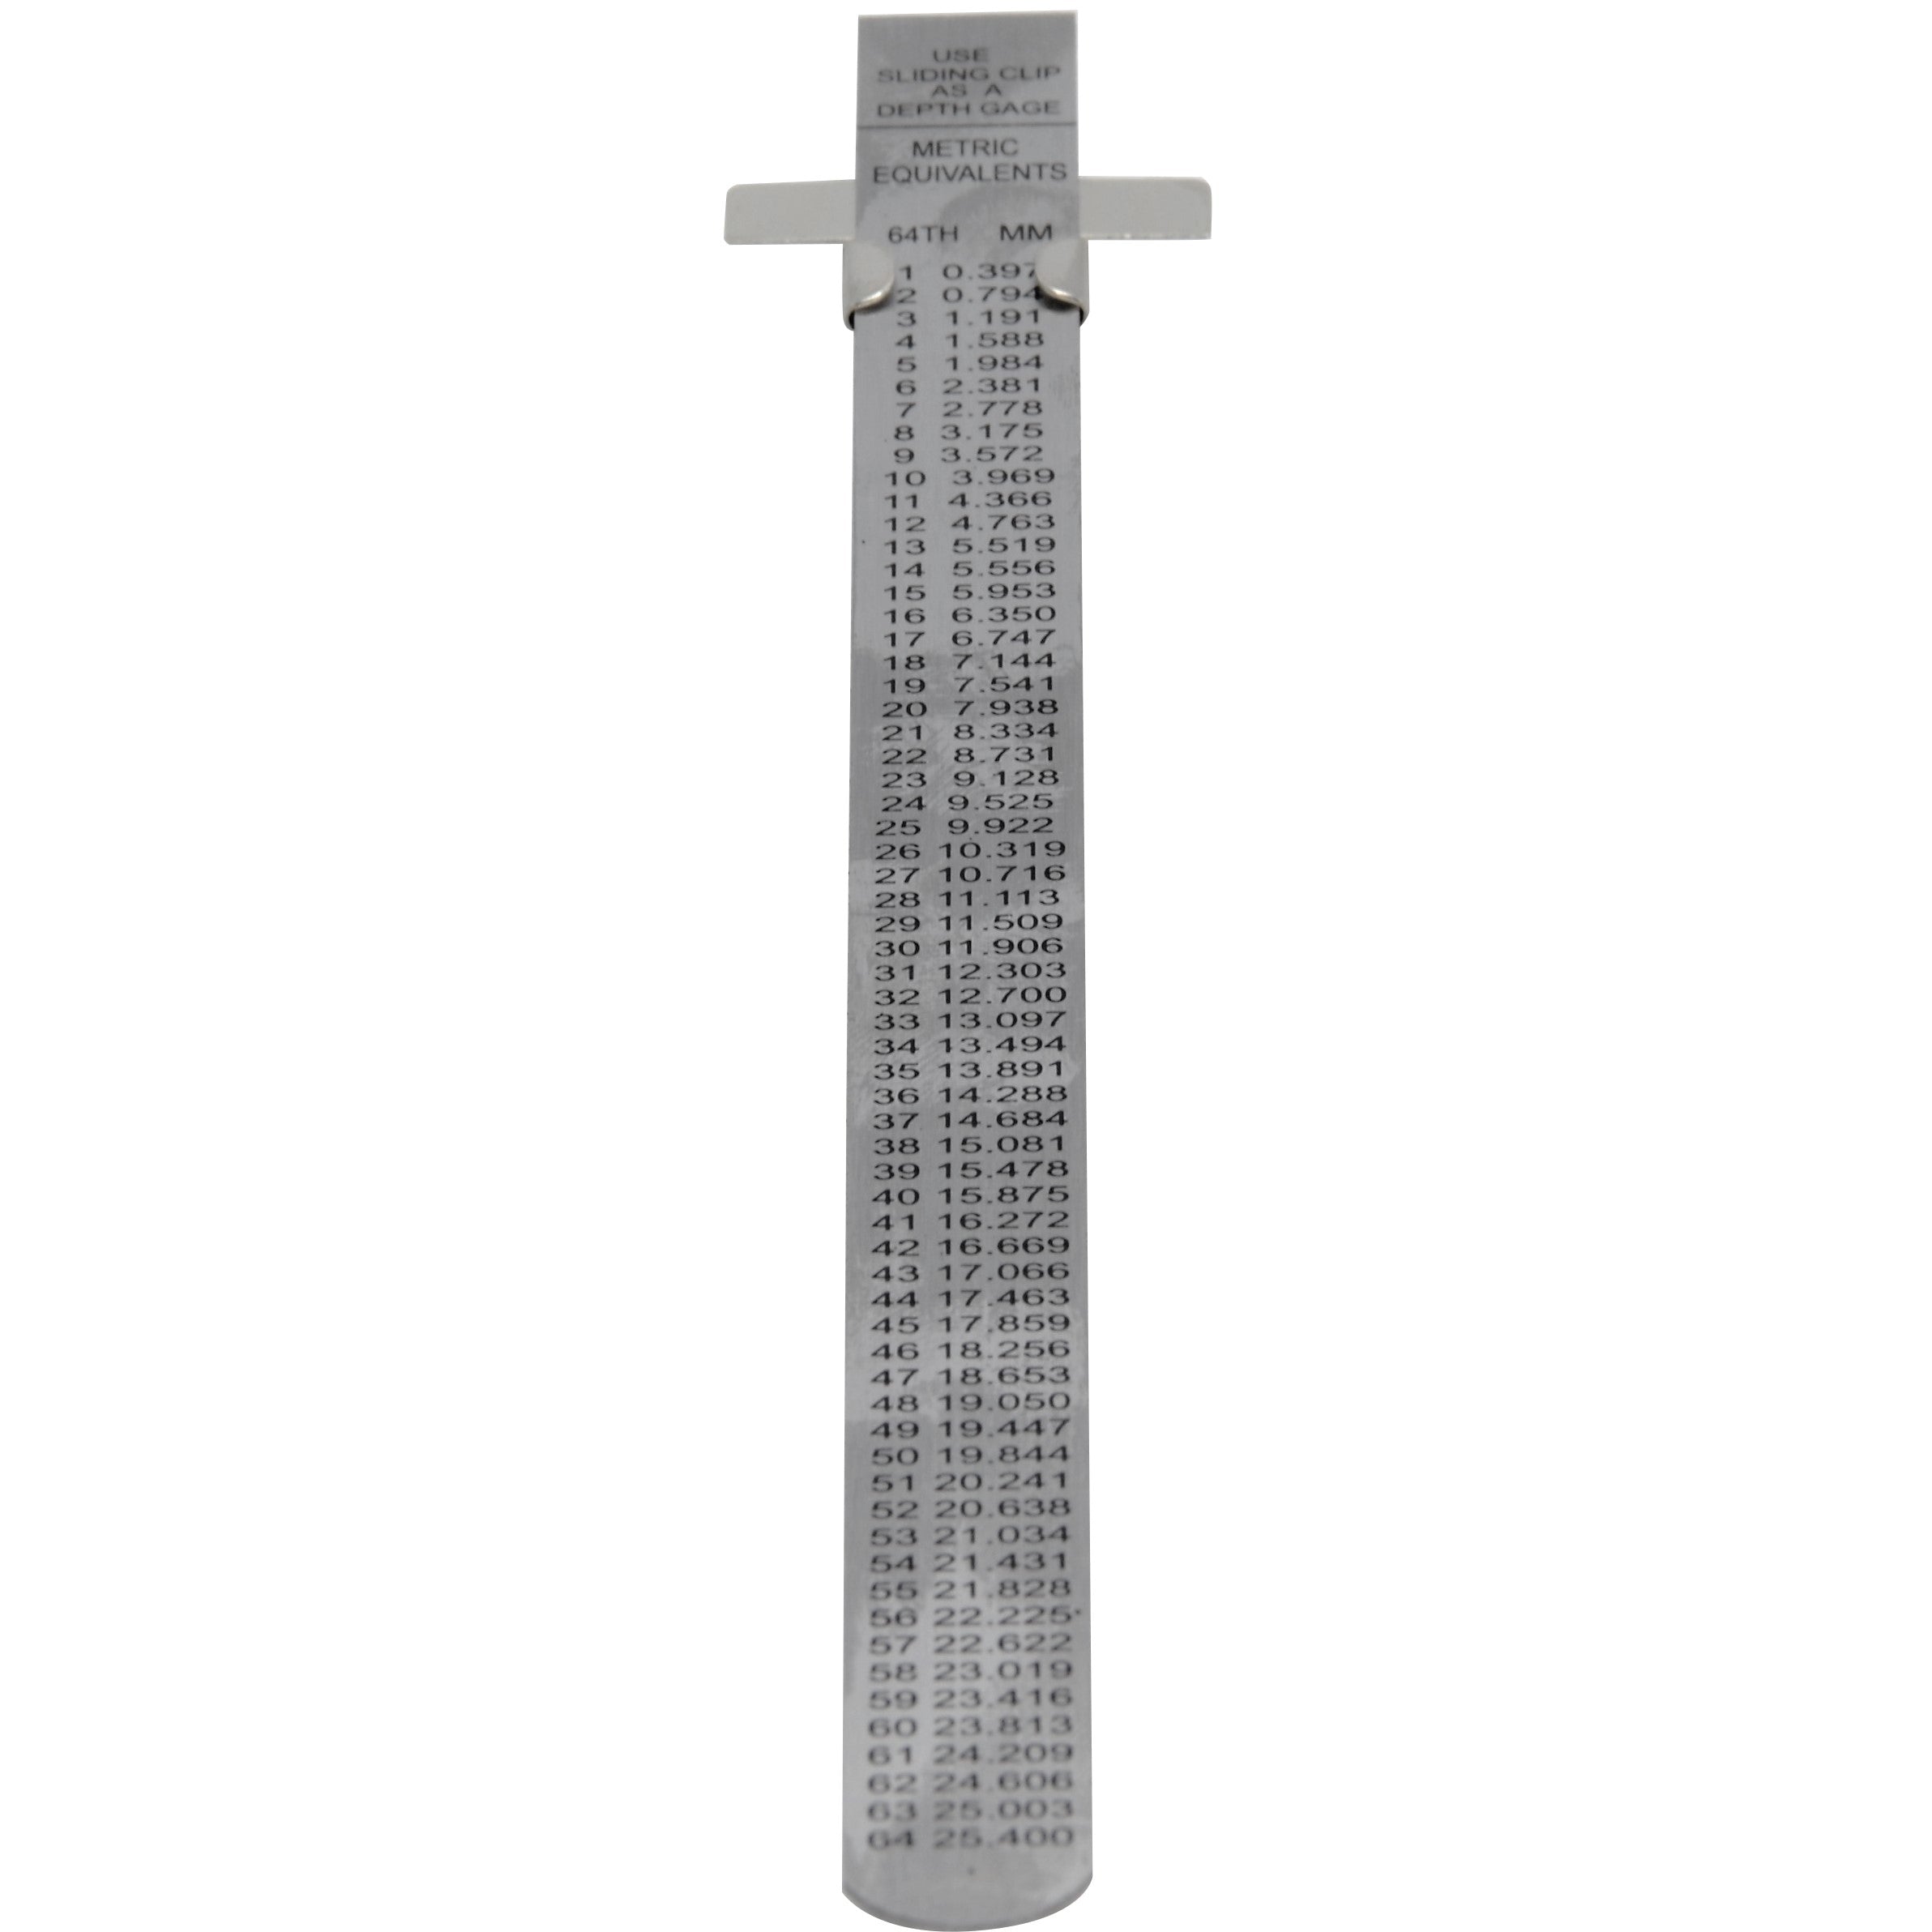 Stainless Steel Pocket ruler Metric / Imperial with depth gauge Range 0-150mm 